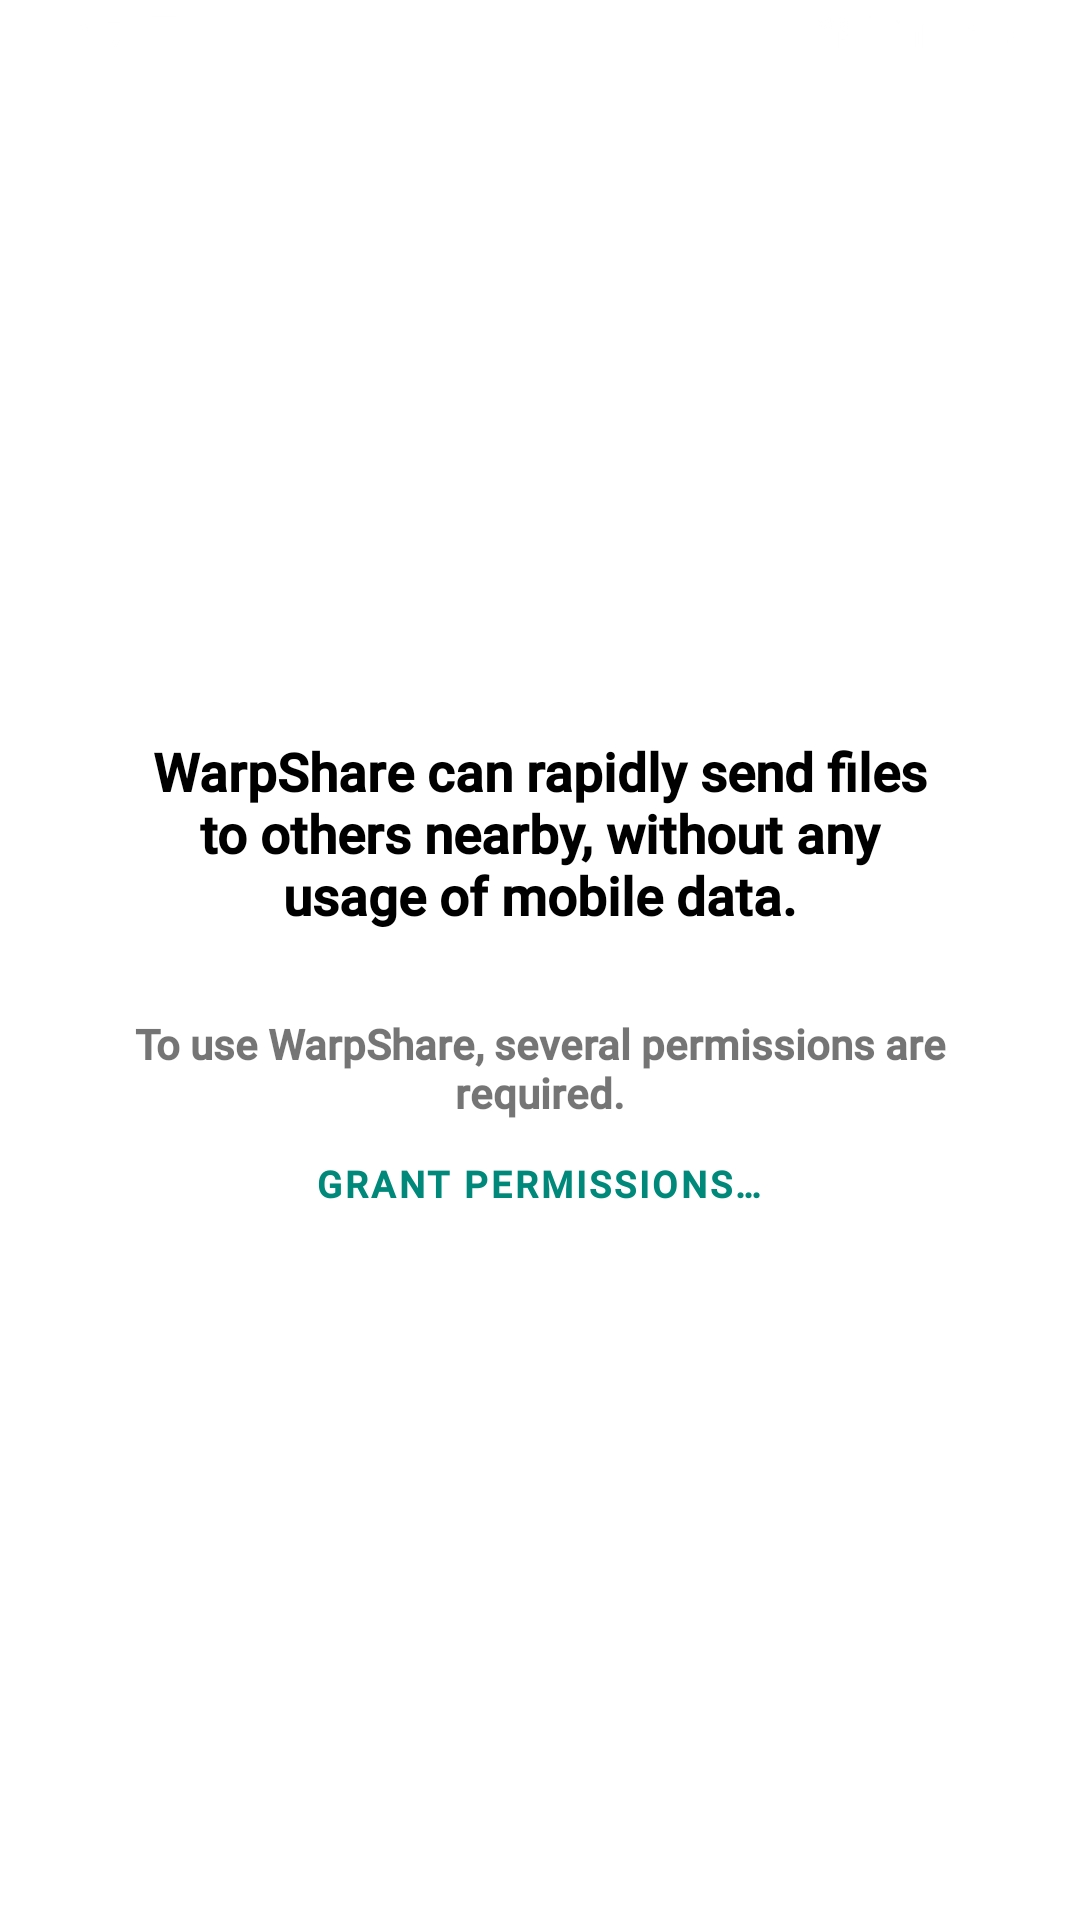 warpshare application